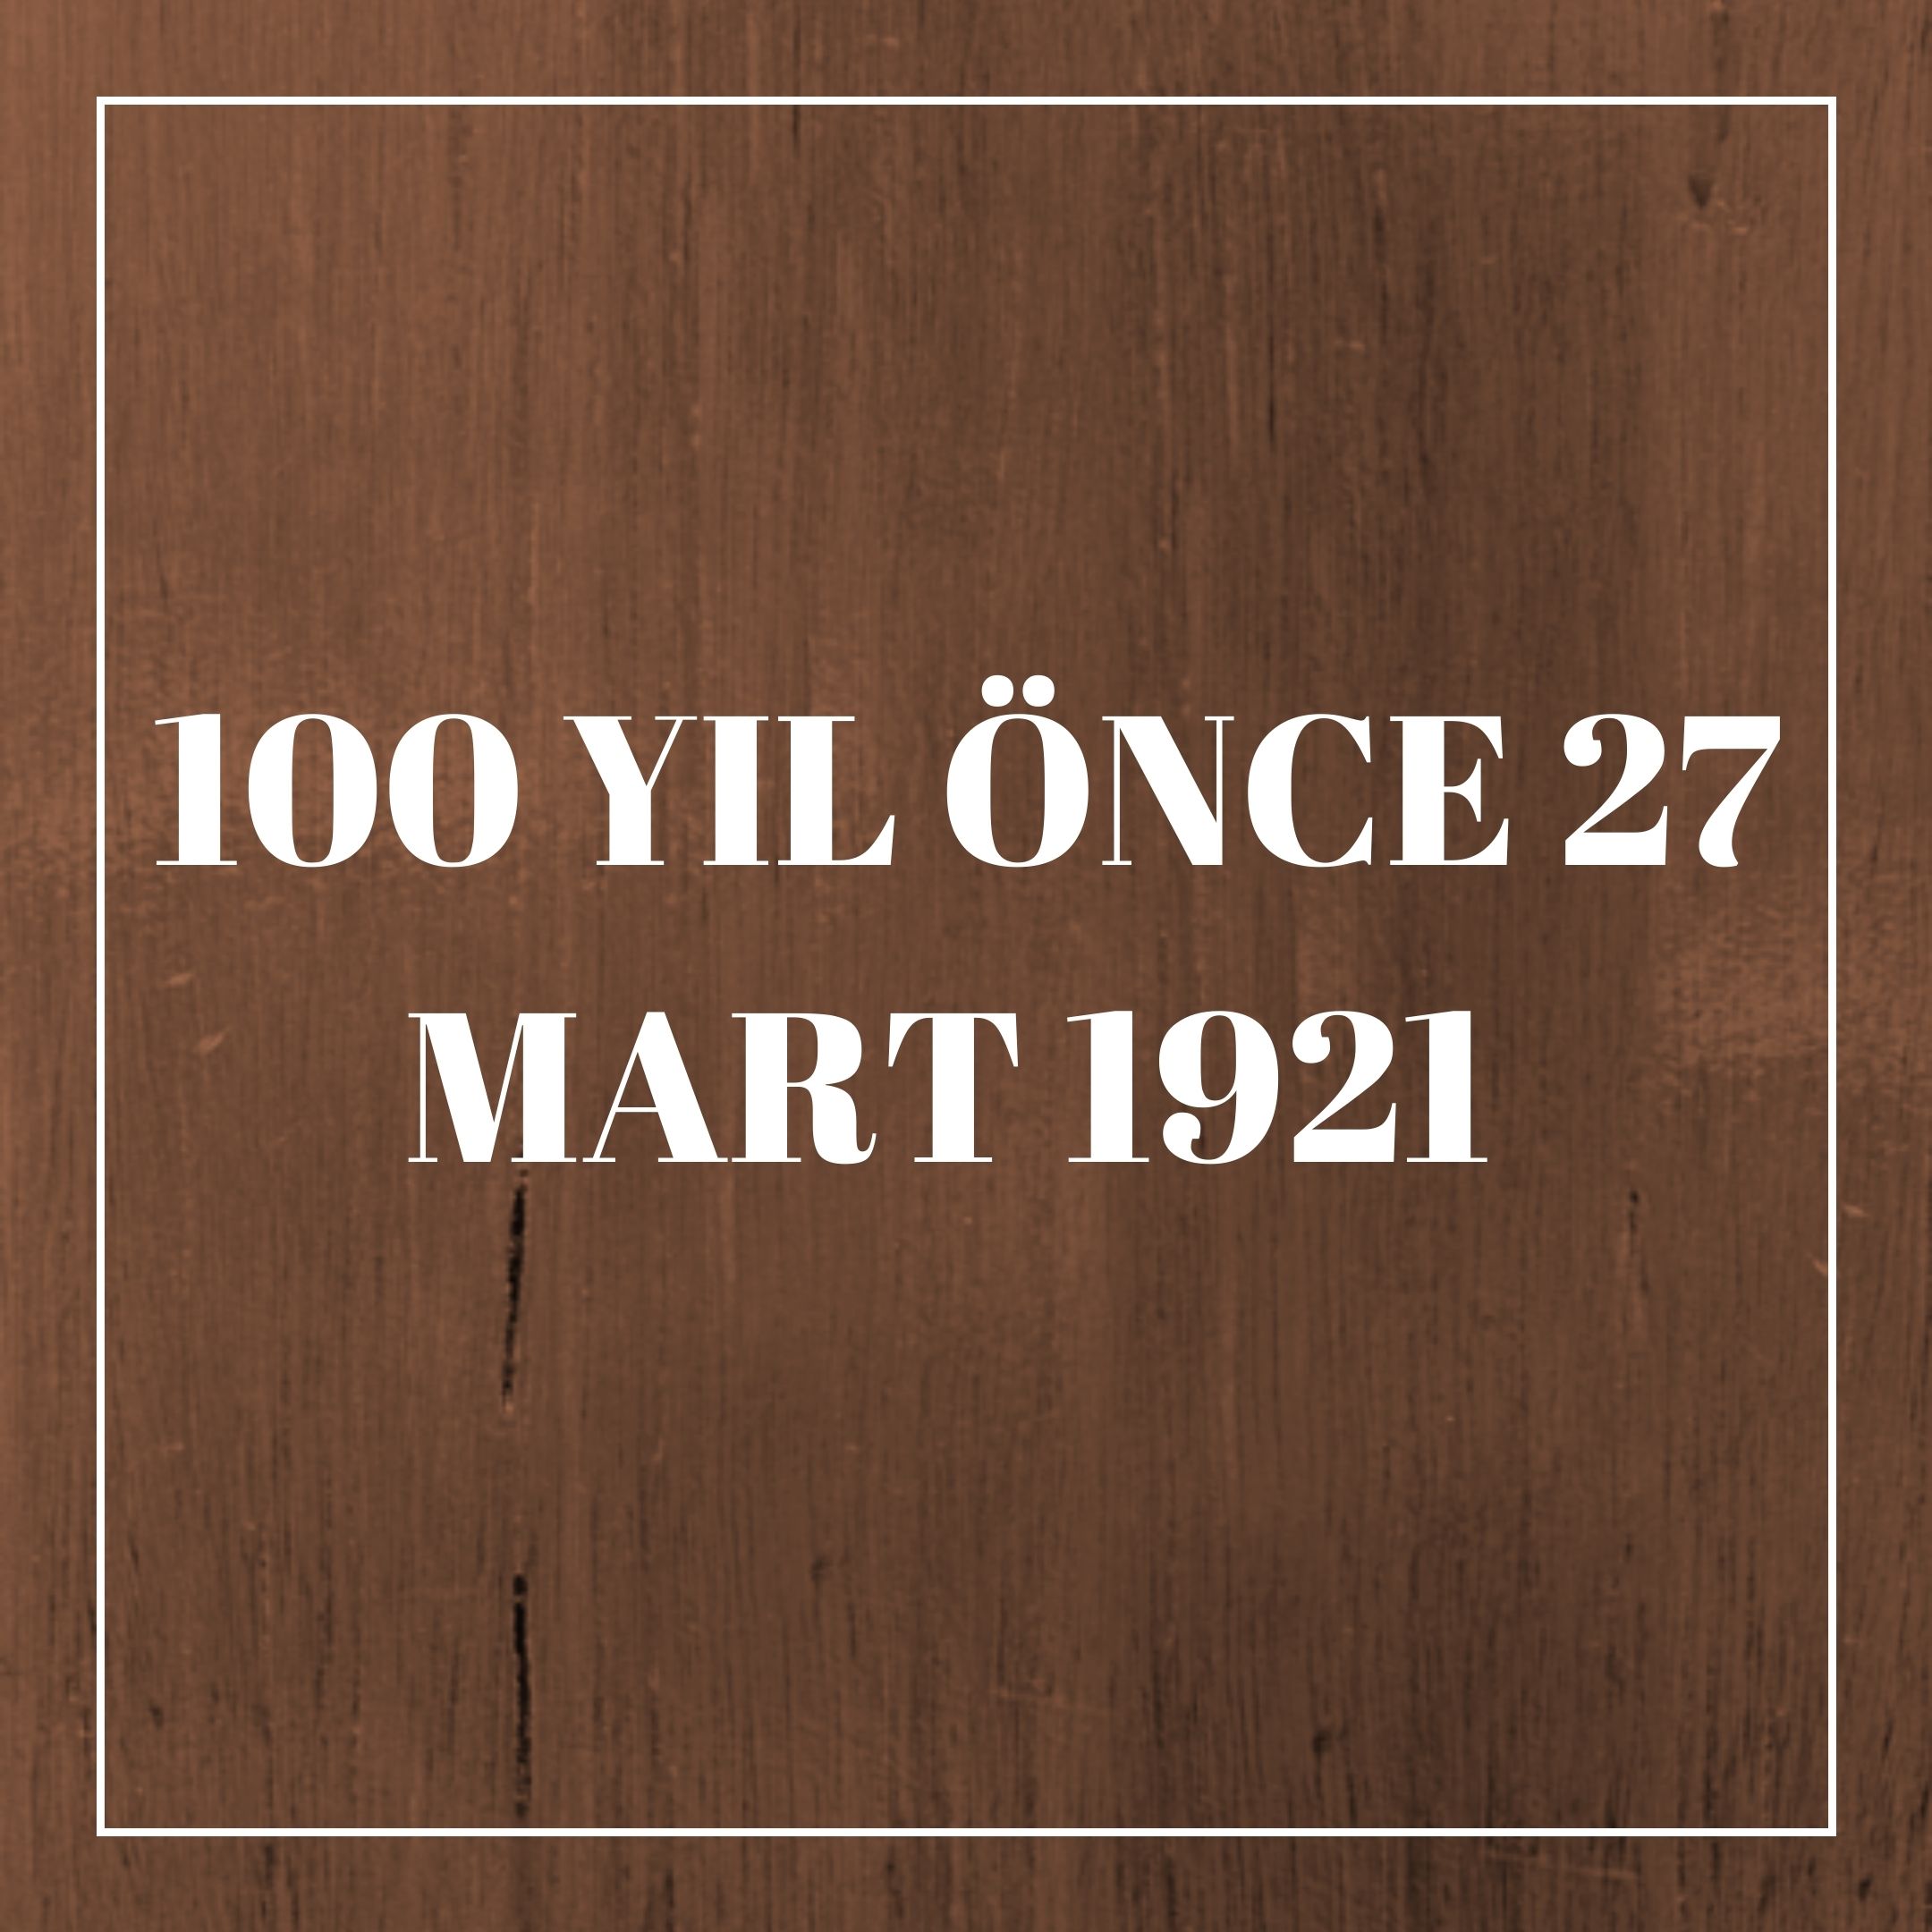 100 YIL ÖNCE 27 MART 1921